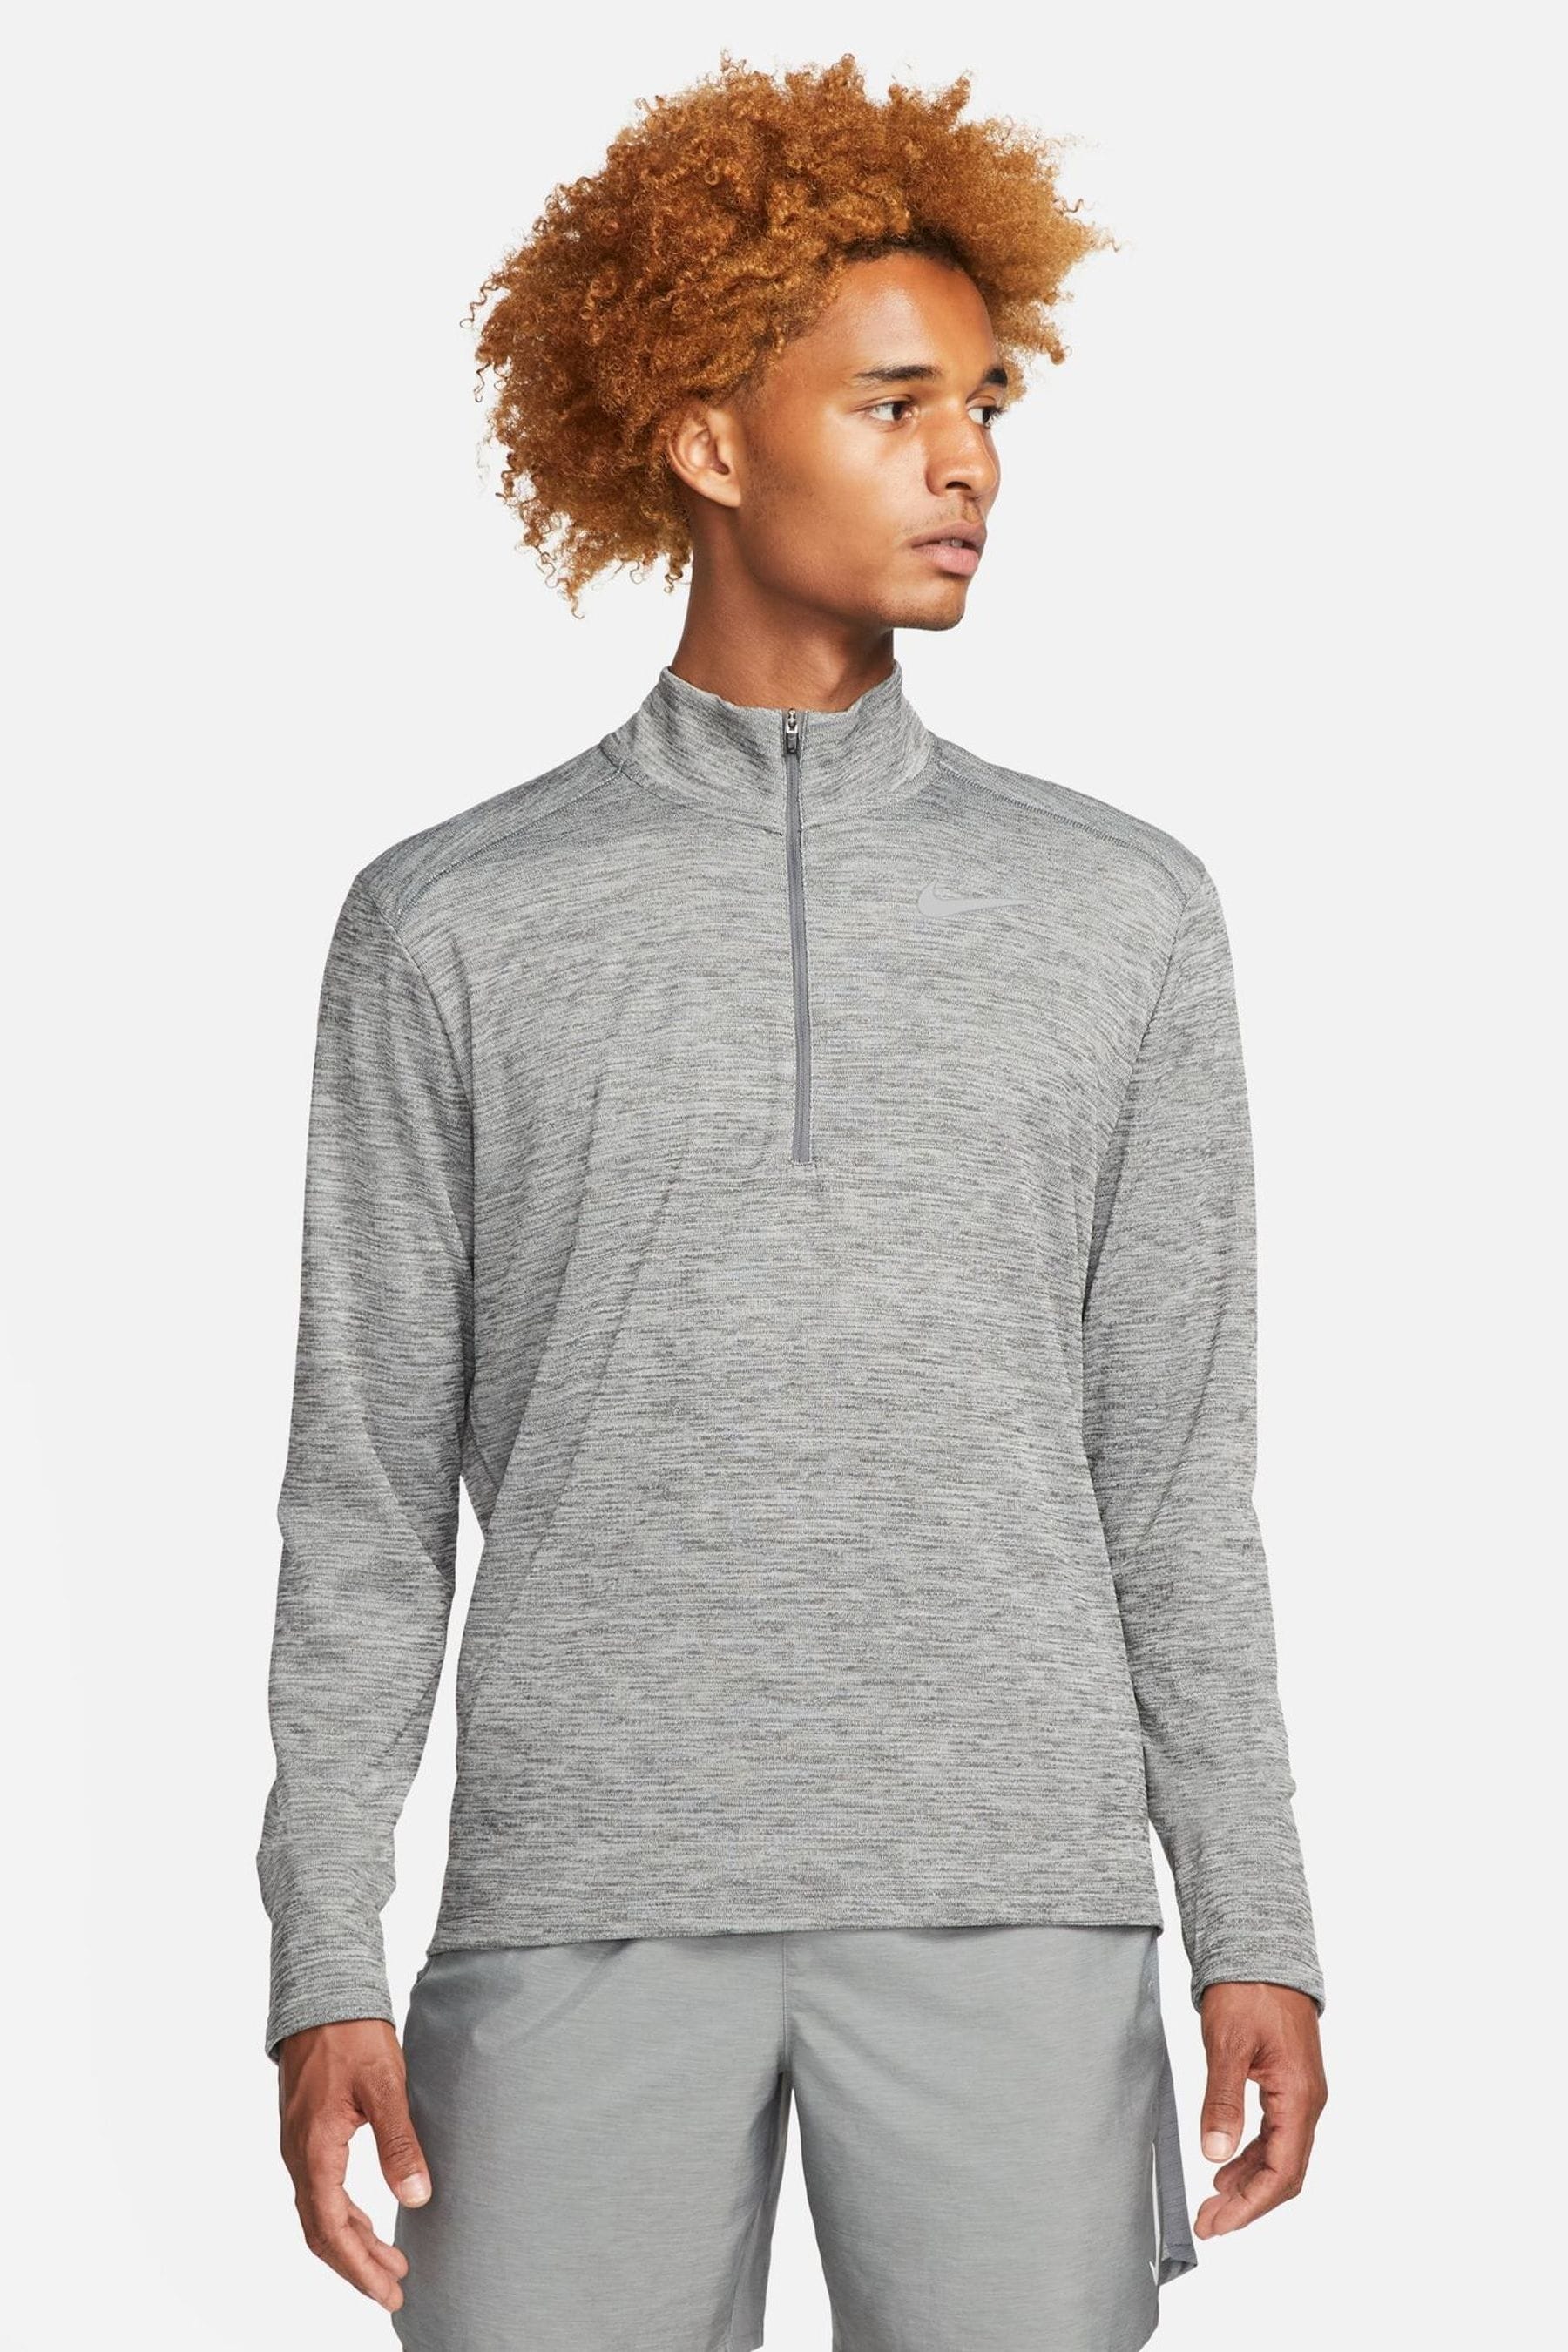 Buy Nike Grey Pacer Half Zip Running Top from the Next UK online shop